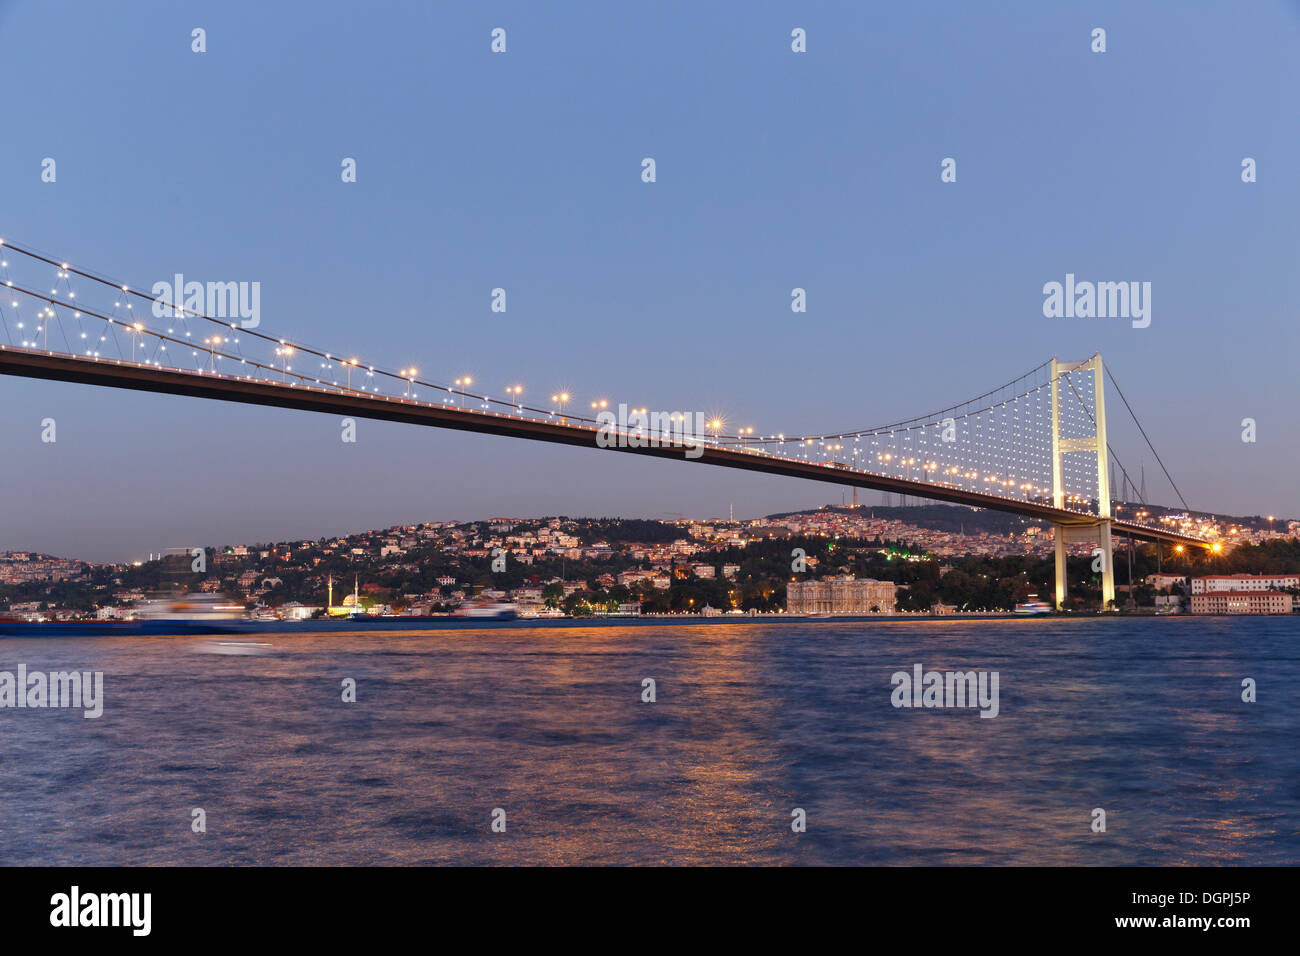 Bosporus-Brücke, Bosporus oder Bosporus und der Beylerbeyi-Palast von Ortaköy, Bosporus, Ortaköy, Besiktas Istanbul Stockfoto